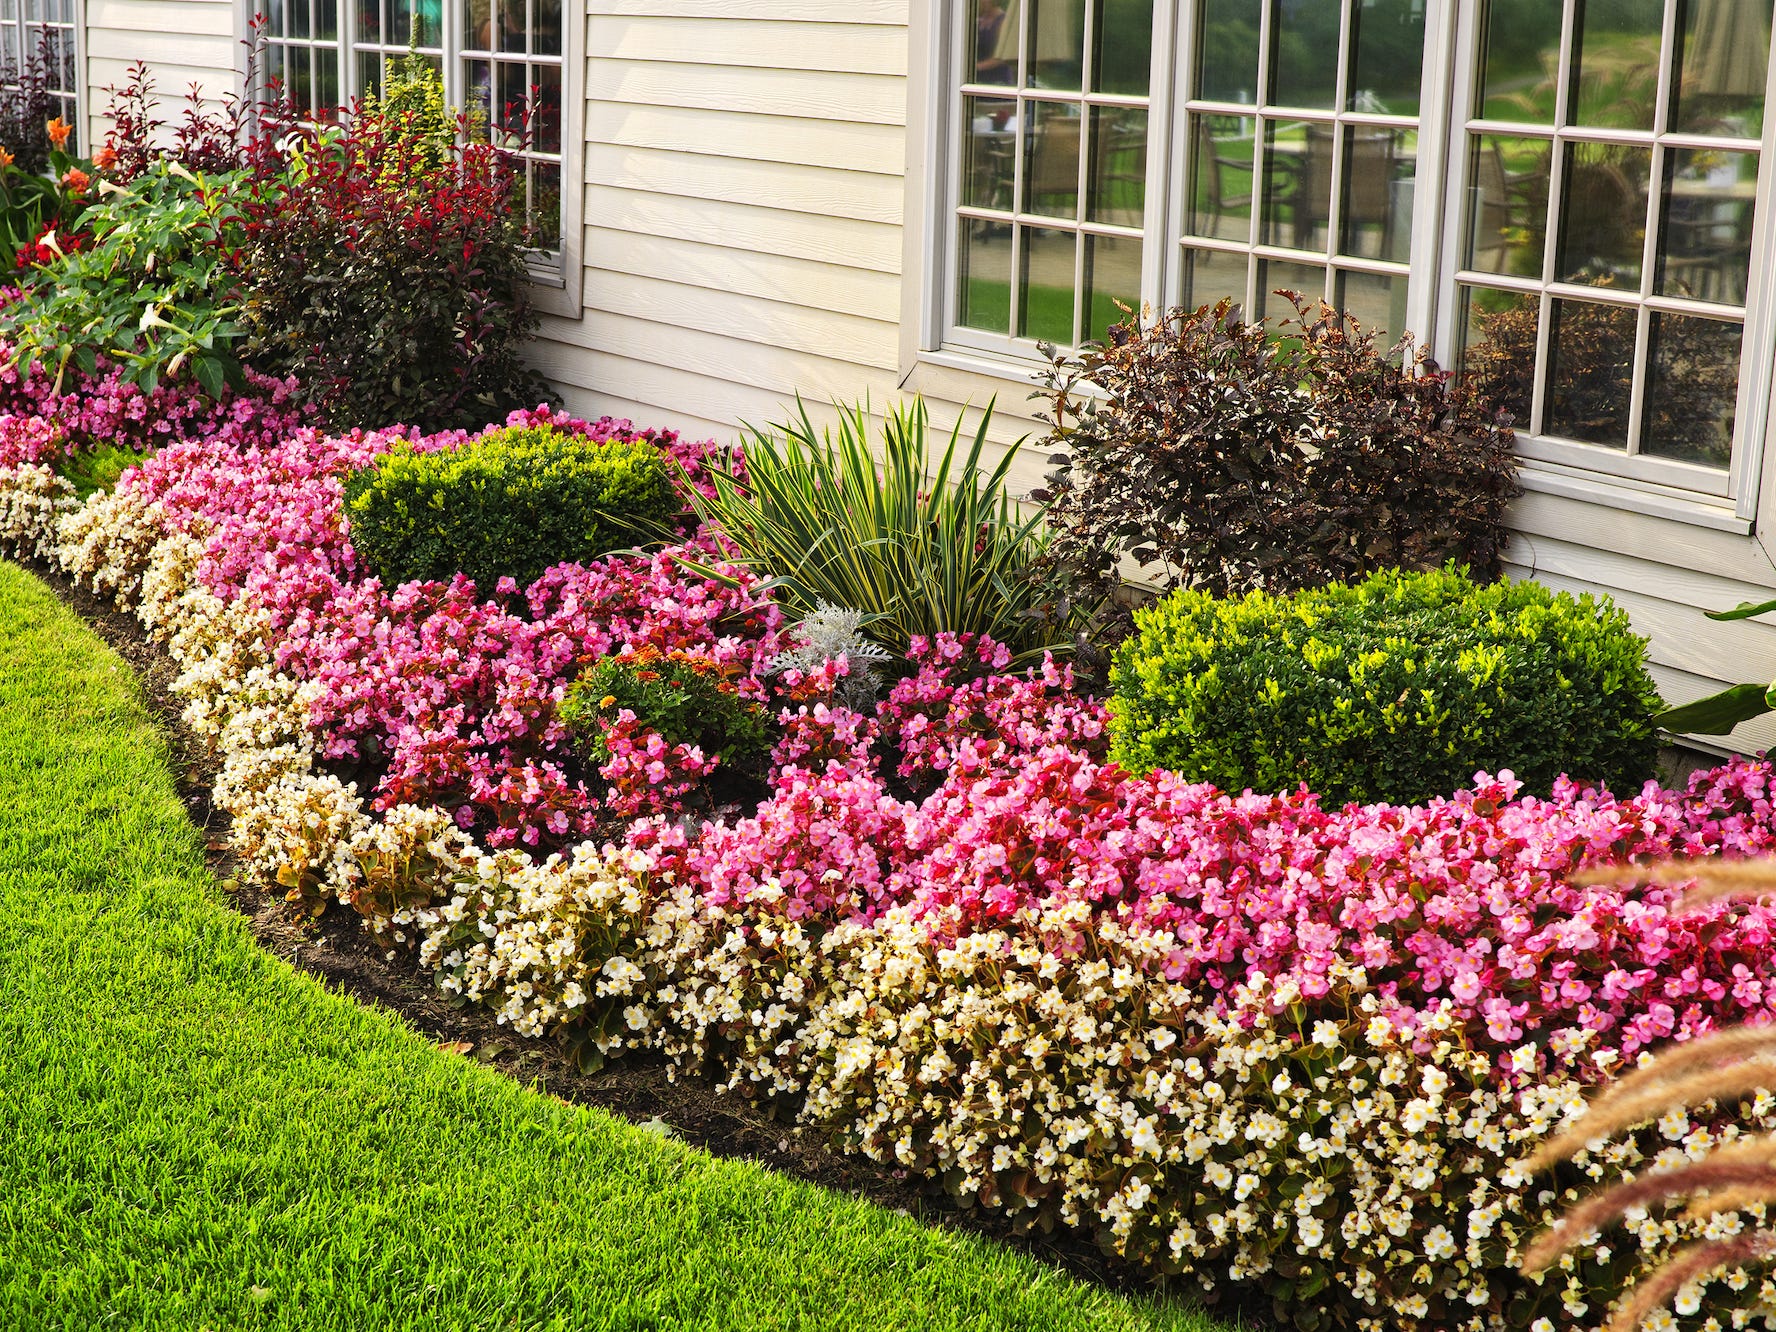 Garten vor einem Haus mit überwiegend rosa und weißen Blumen und einigen Sträuchern